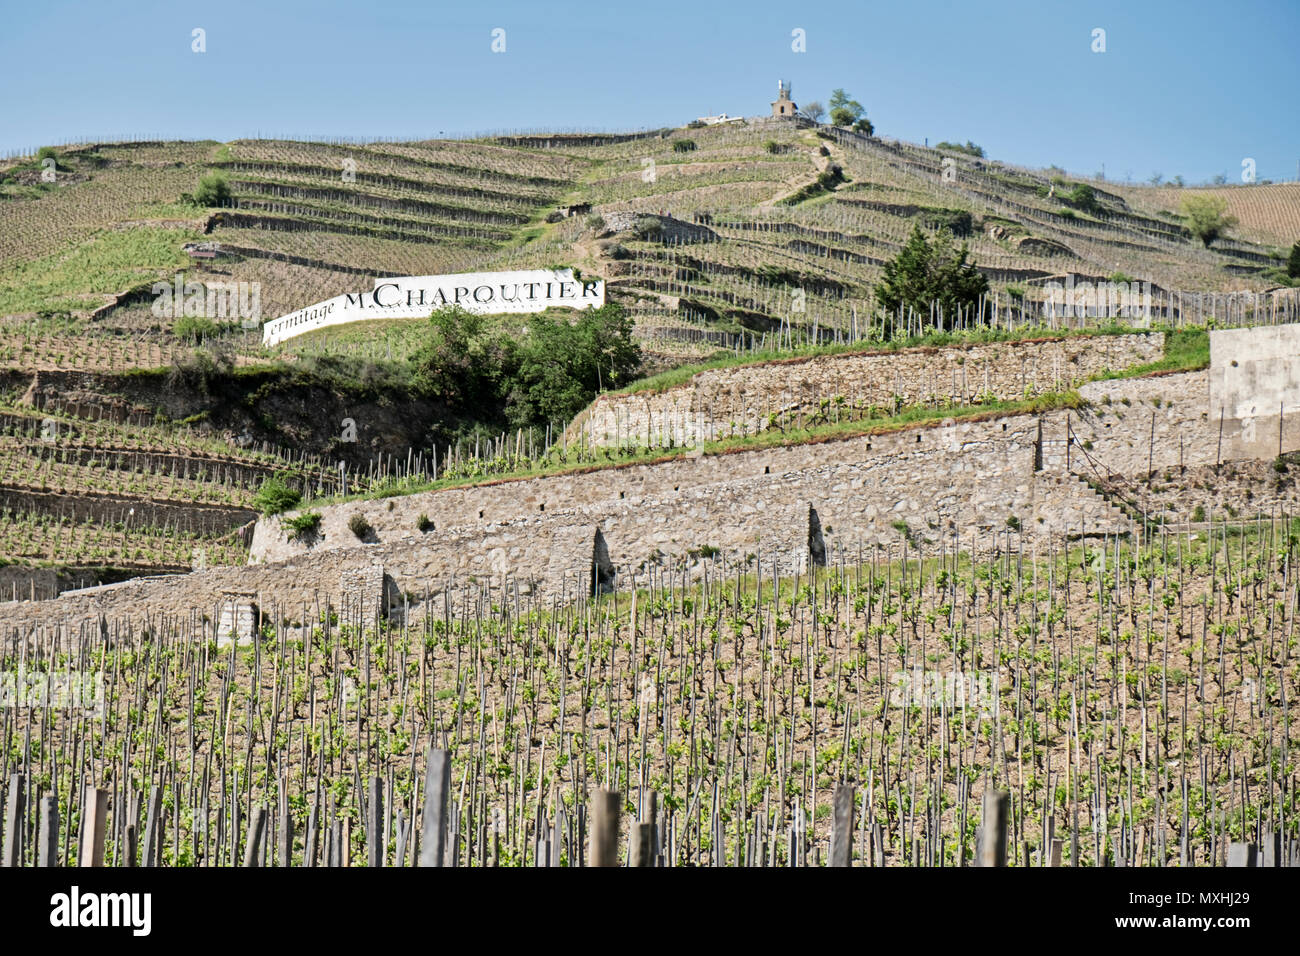 TAIN L'HERMITAGE, FRANCE - 25 avril 2018 : vignobles en terrasses mènent la colline derrière la ville de Tain L'Hermitage dans la vallée du Rhône. Banque D'Images